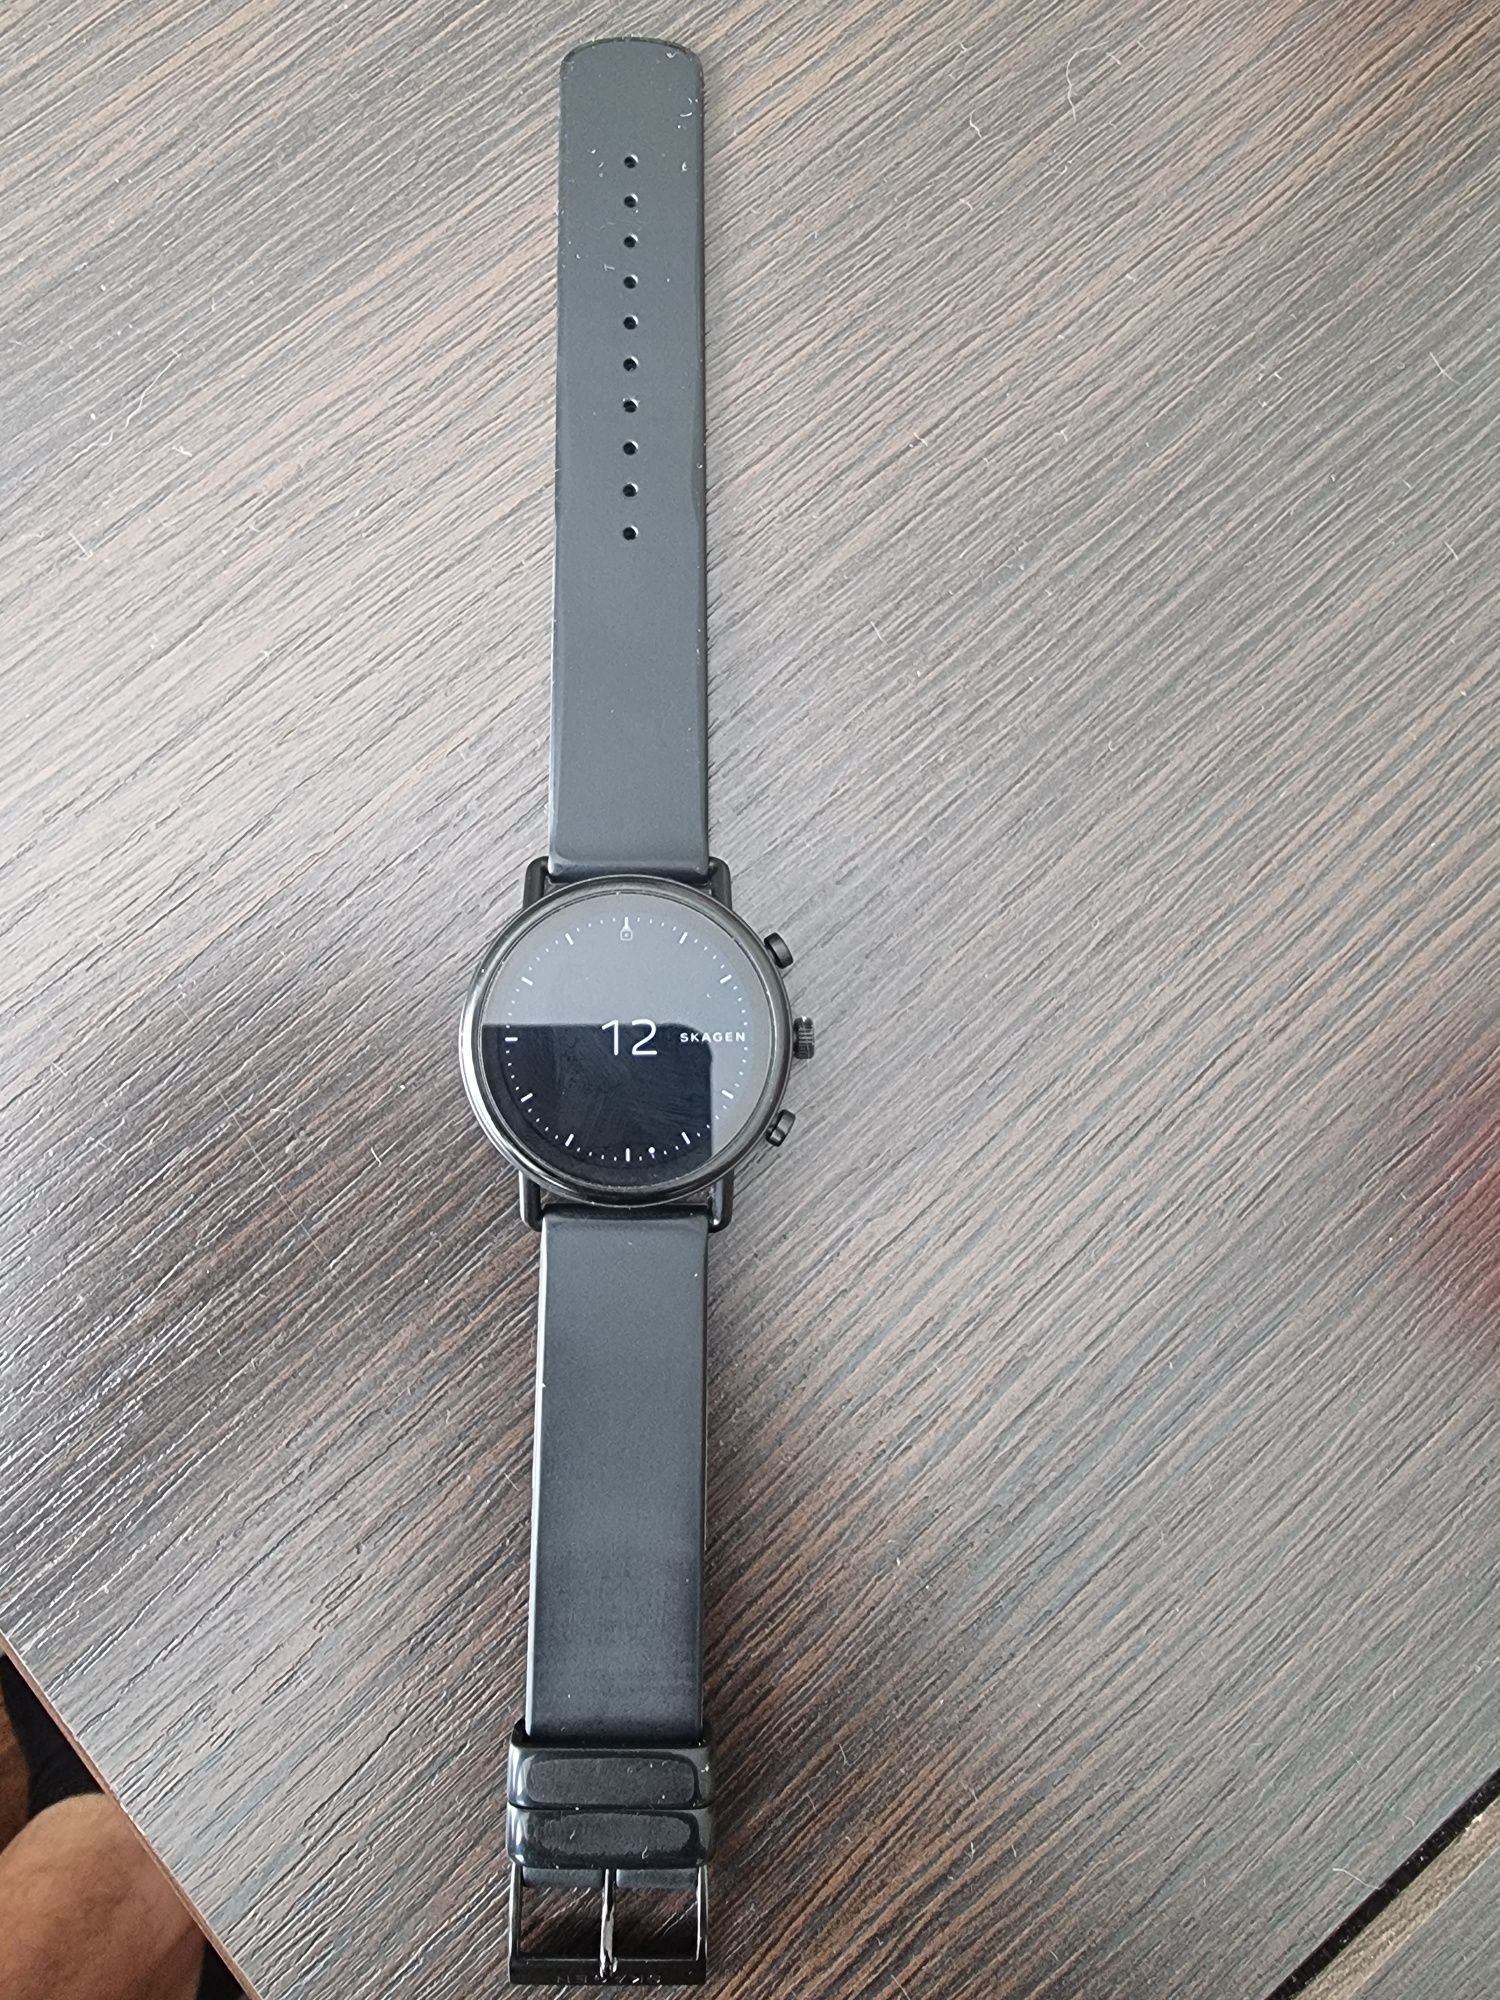 Zegarek smartwatch Skagen Falster czarny bardzo dobry stan!